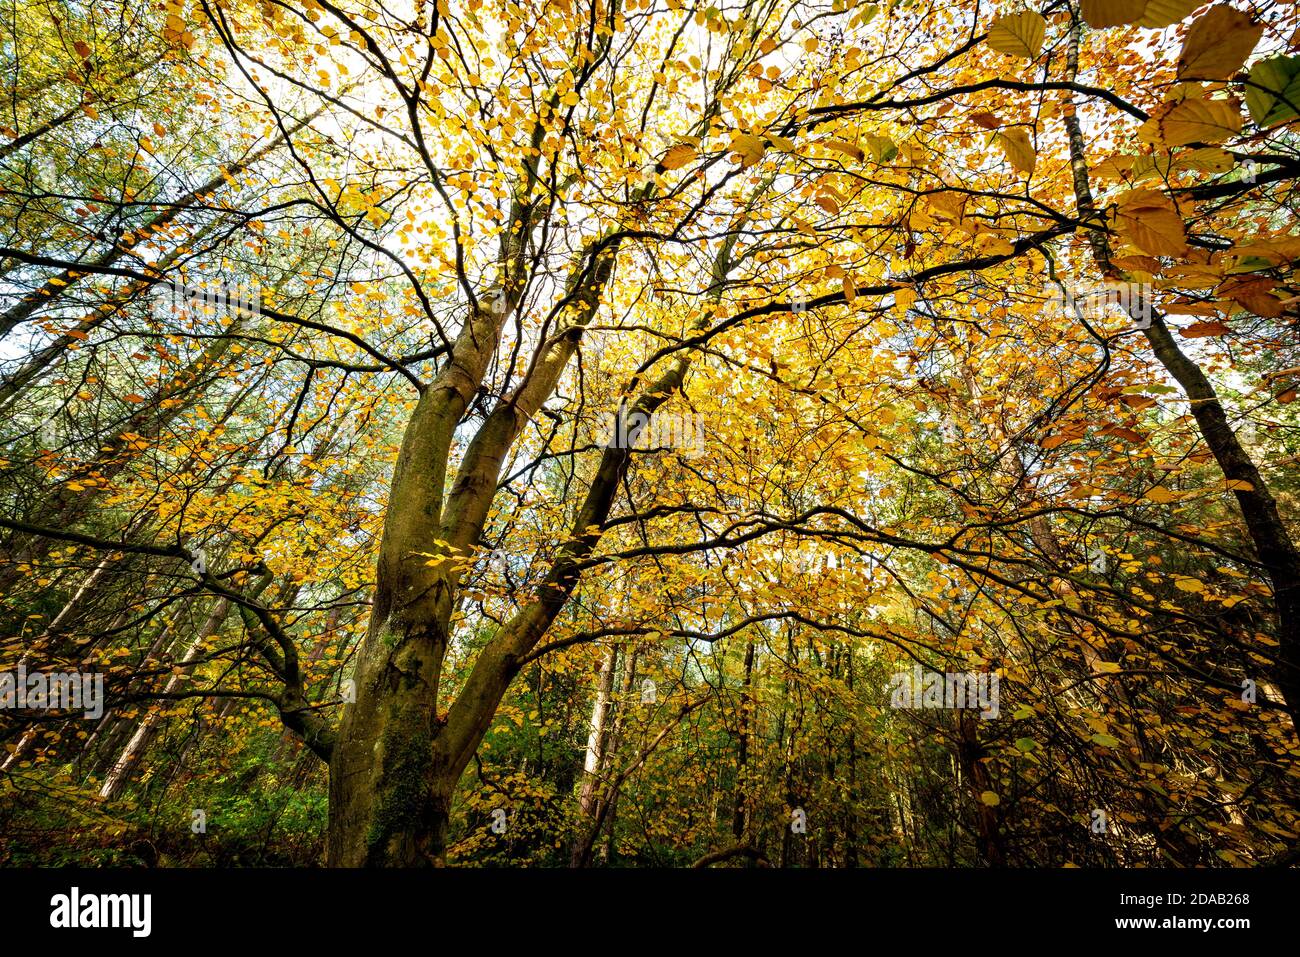 Ein herbstlicher Baum mit gelben Blättern. Blidworth Woods Nottinghamshire England Großbritannien Stockfoto